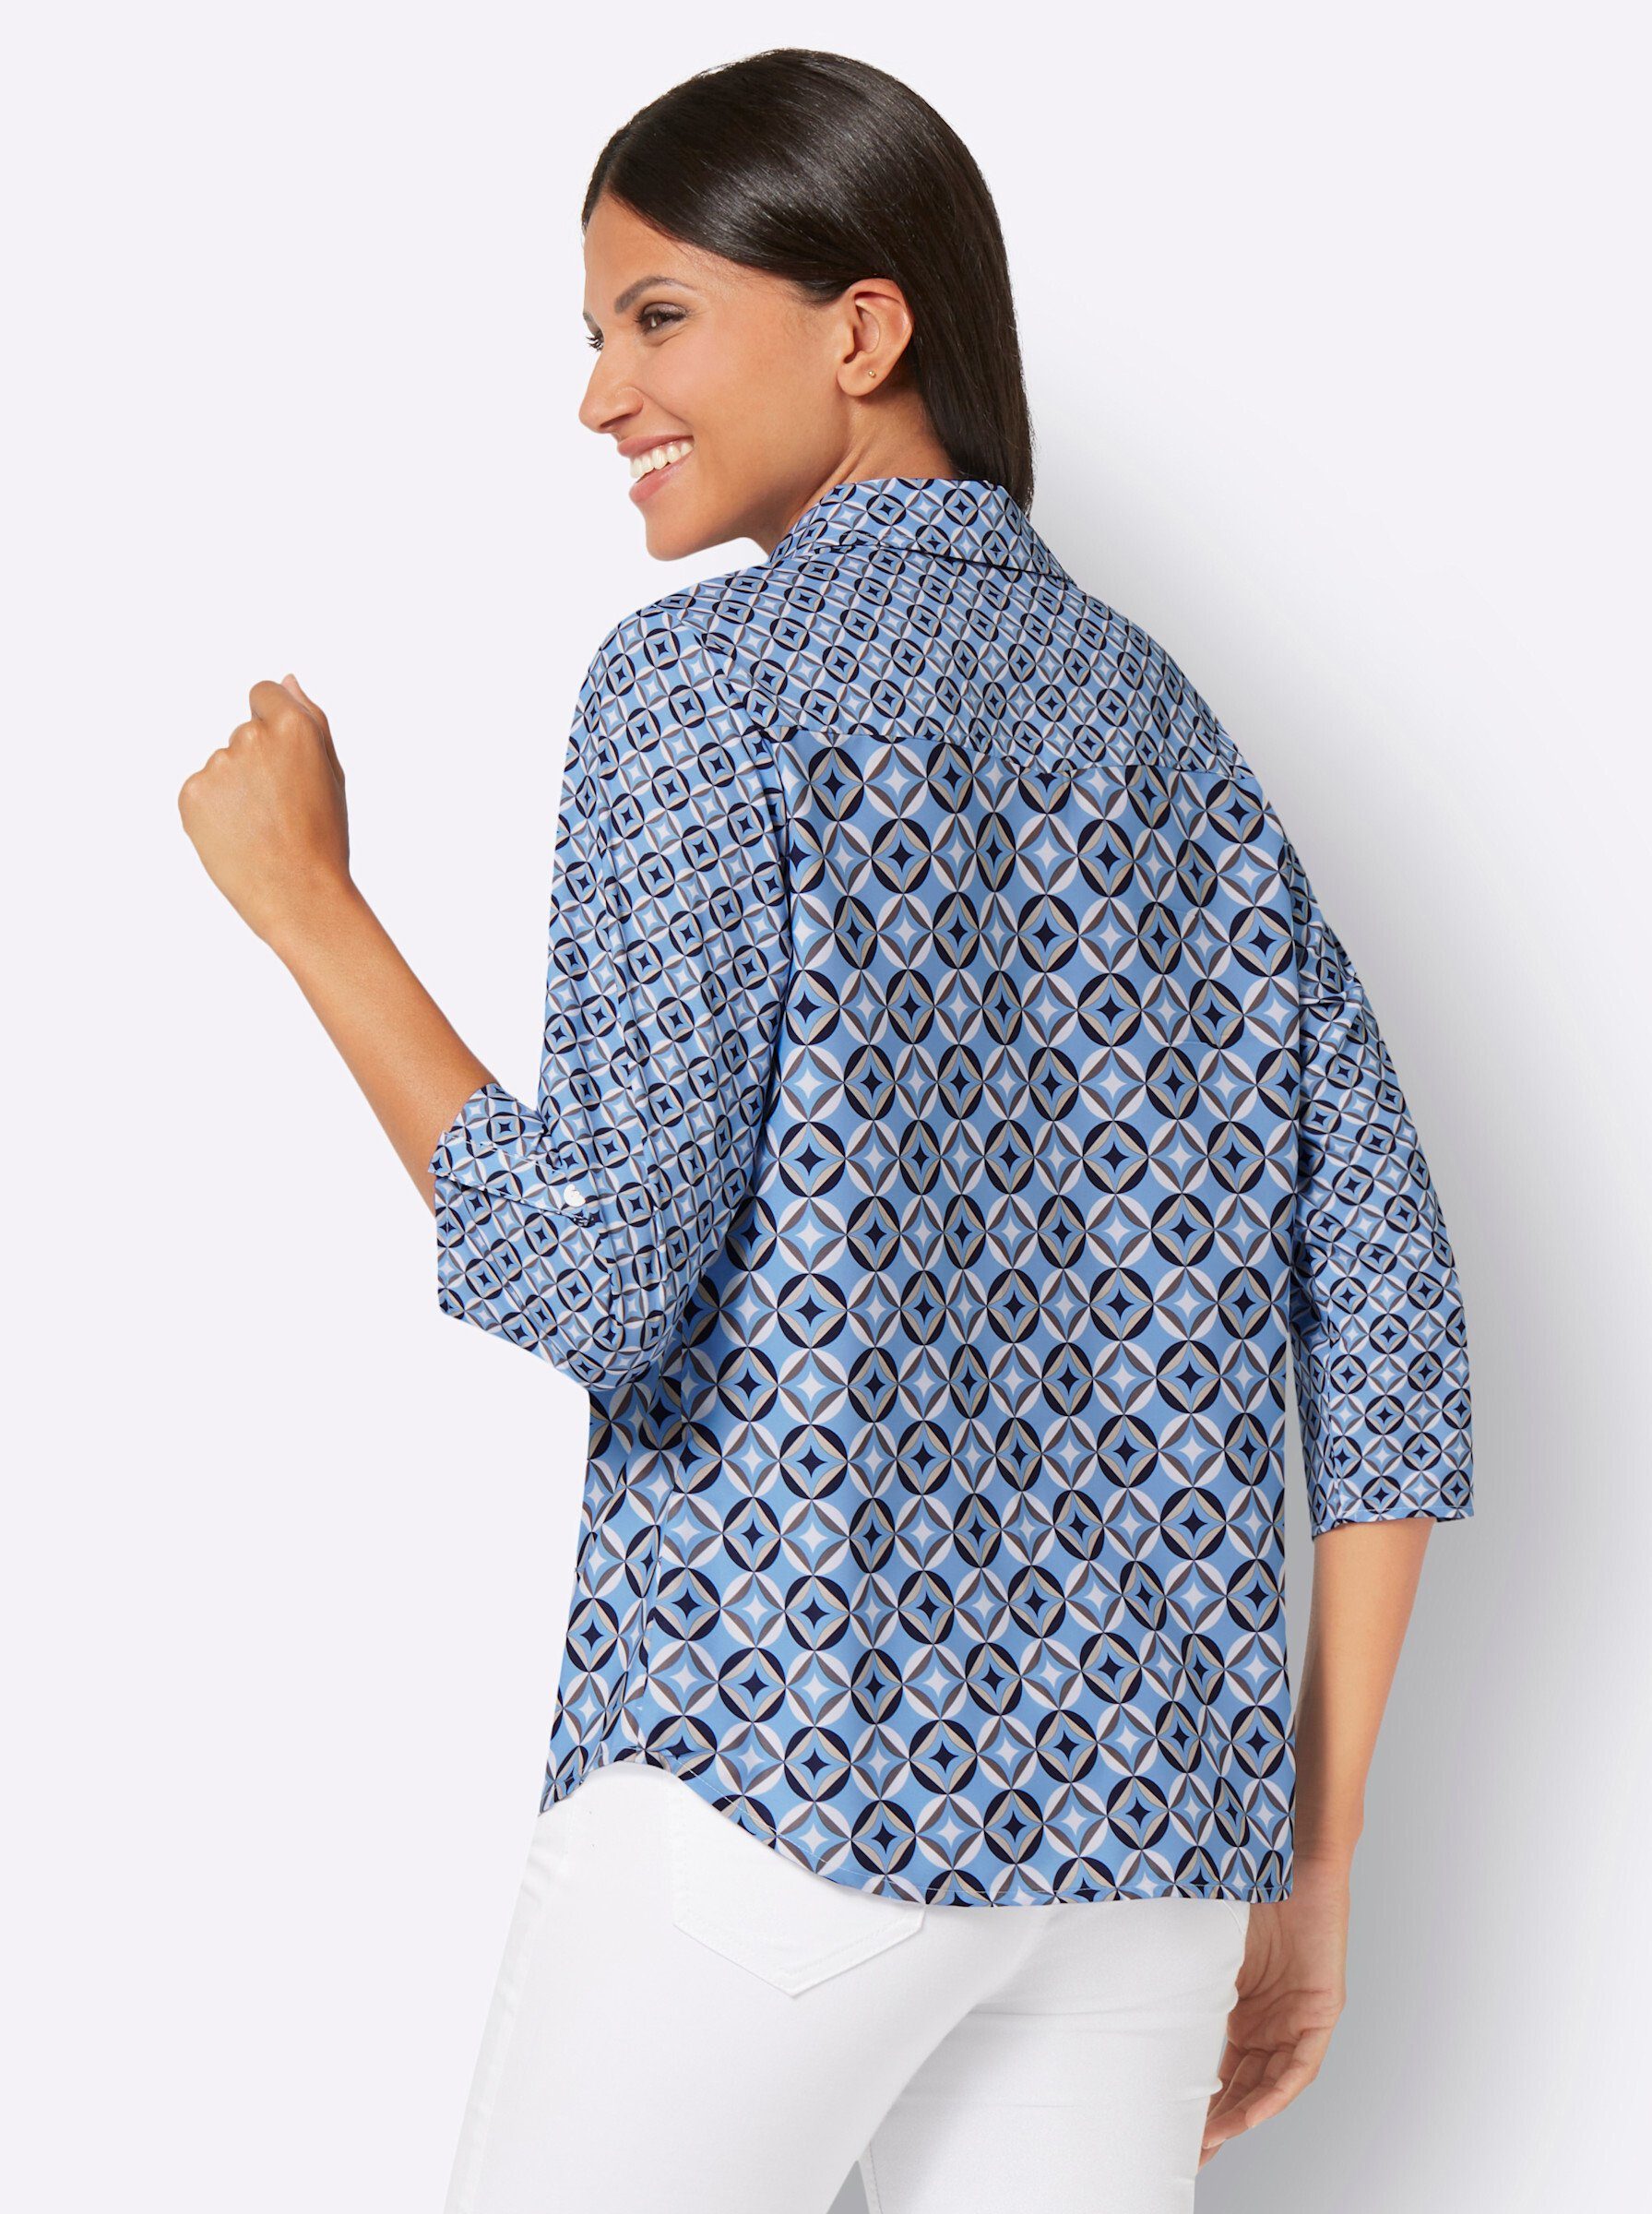 Klassische Sieh an! himmelblau-marine-bedruckt Bluse